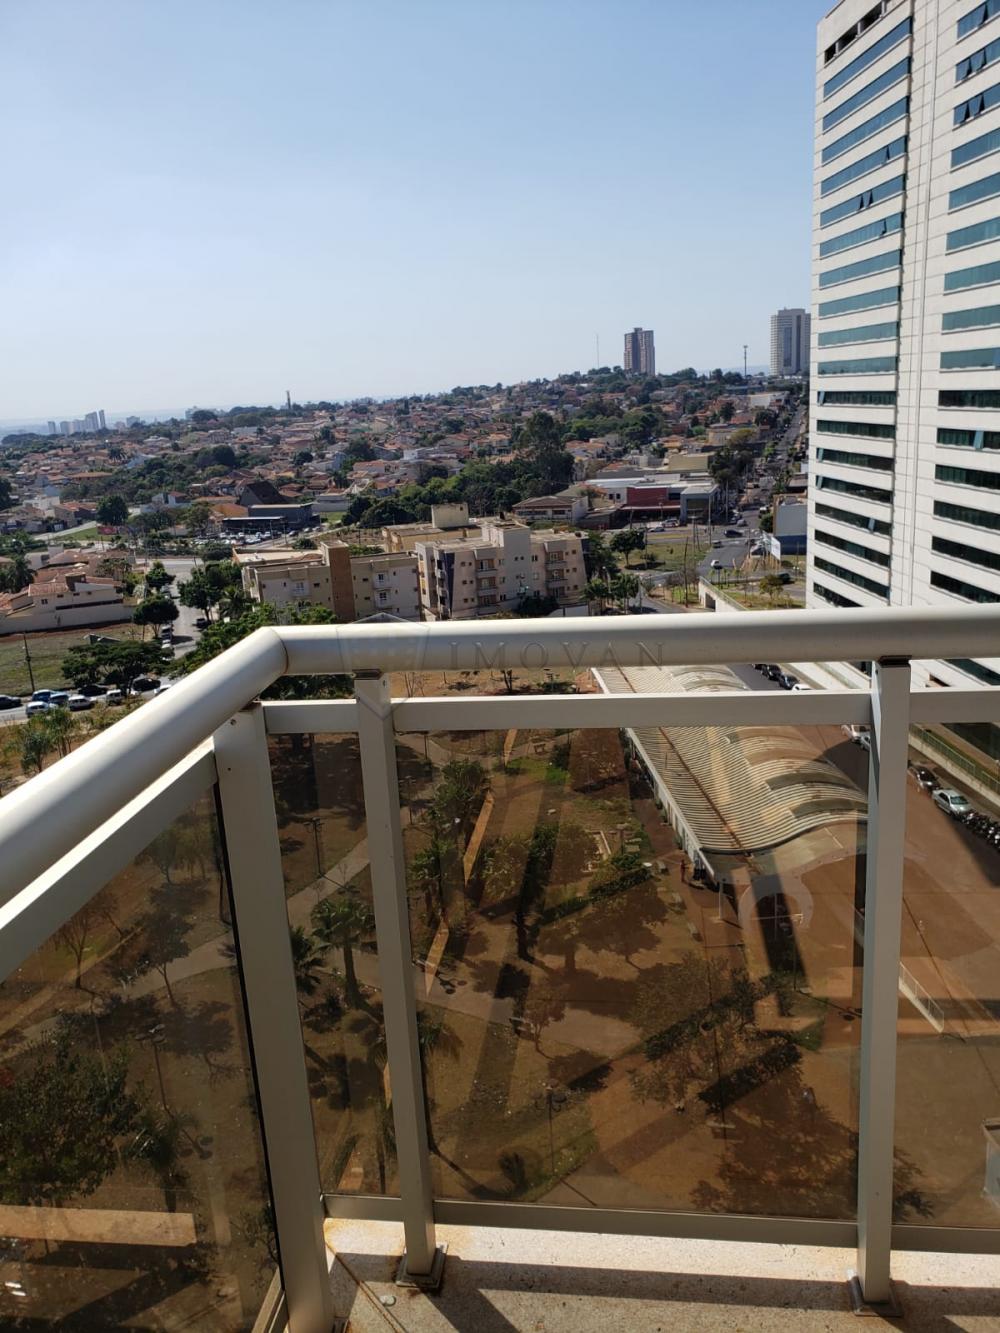 Comprar Apartamento / Padrão em Ribeirão Preto R$ 410.000,00 - Foto 8